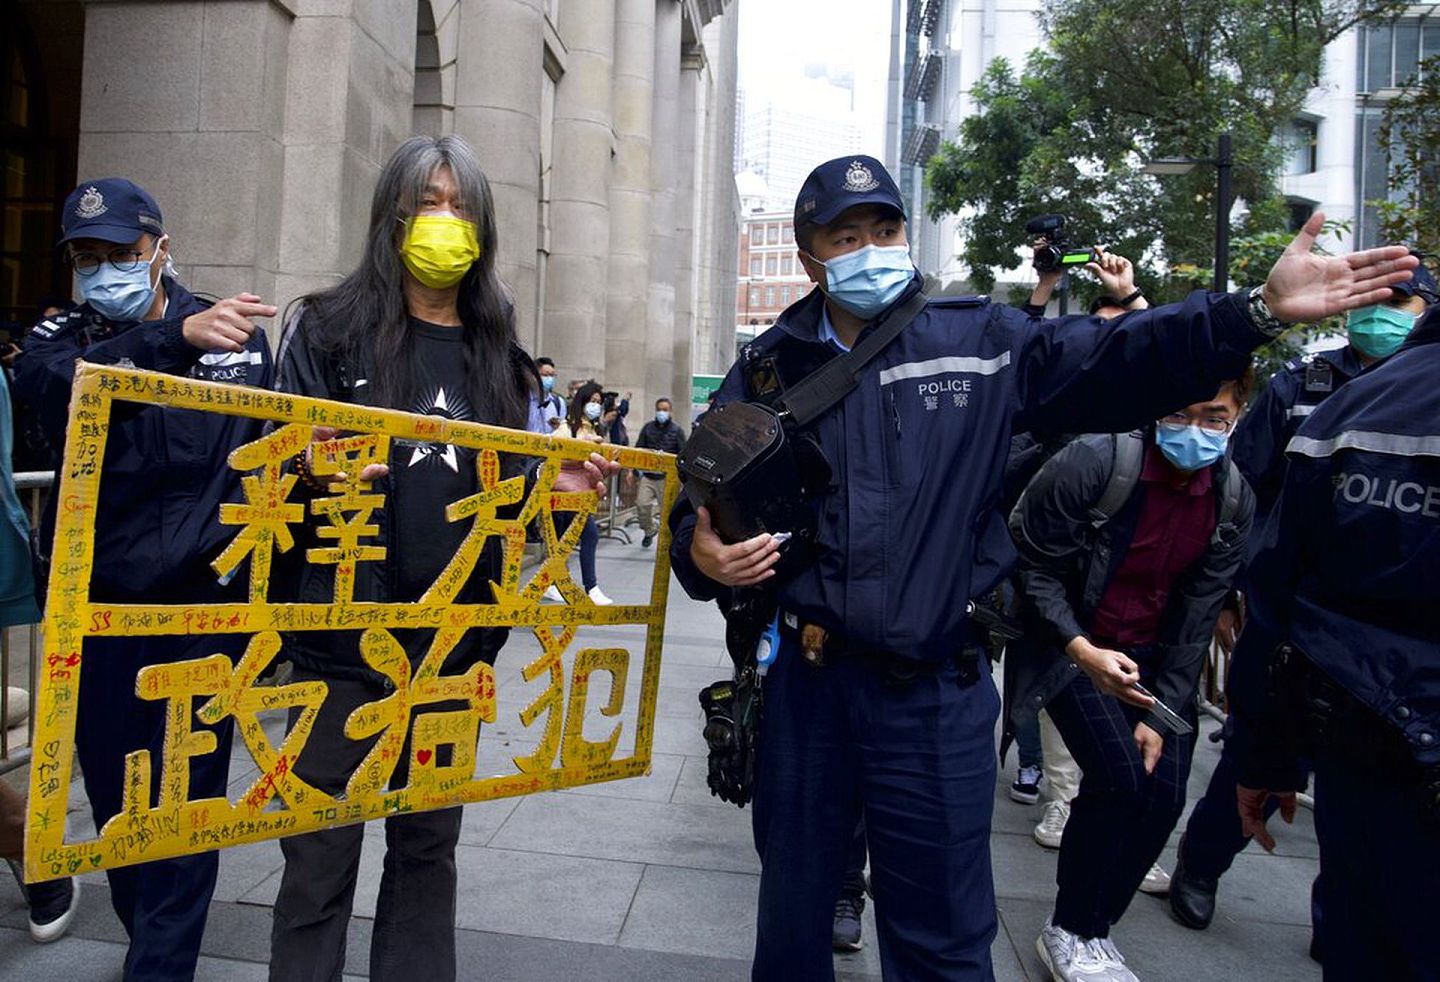 《苹果日报》创办者黎智英有涉违反国安法等多项罪名在身，其对香港的批评与对抗行为已经涉逾越了国家安全的边界，但许多港人并未意识到其中的利害性。图为2021年2月黎智英的拥护者在香港终审法院外面要求释放他。(AP ）